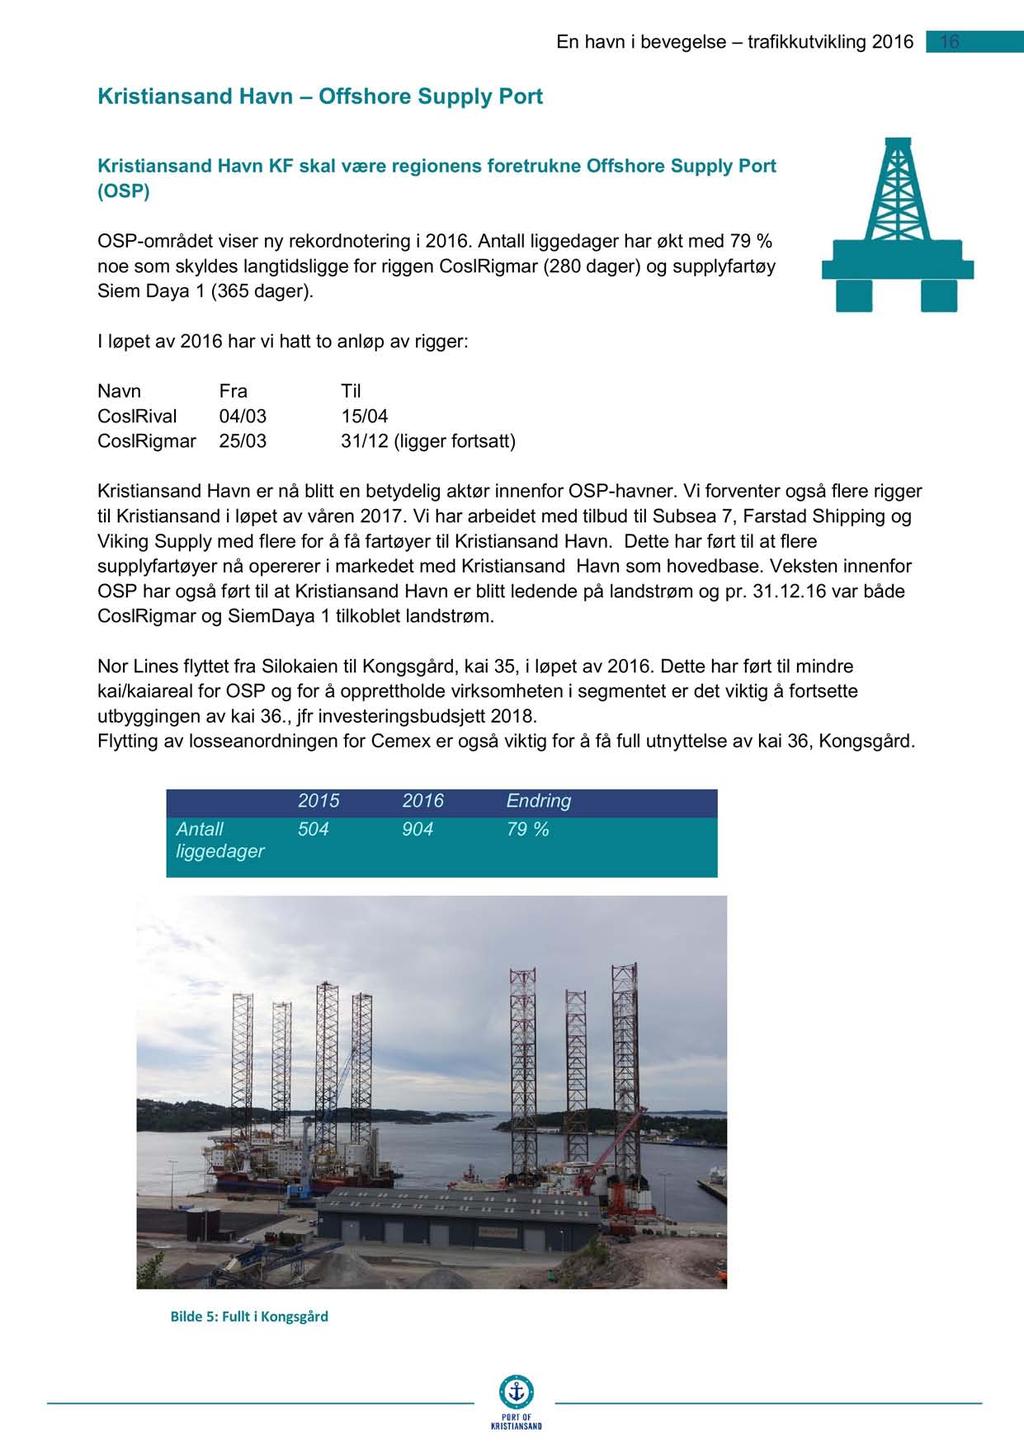 En havn i bevegelse trafikkutvikling 6 6 Krist i ansand Havn Offshore Supply Port Kristiansand Havn KF skal være regionens foretrukne Offshore Supply Port (OSP) OSP - området viser ny rekordnotering